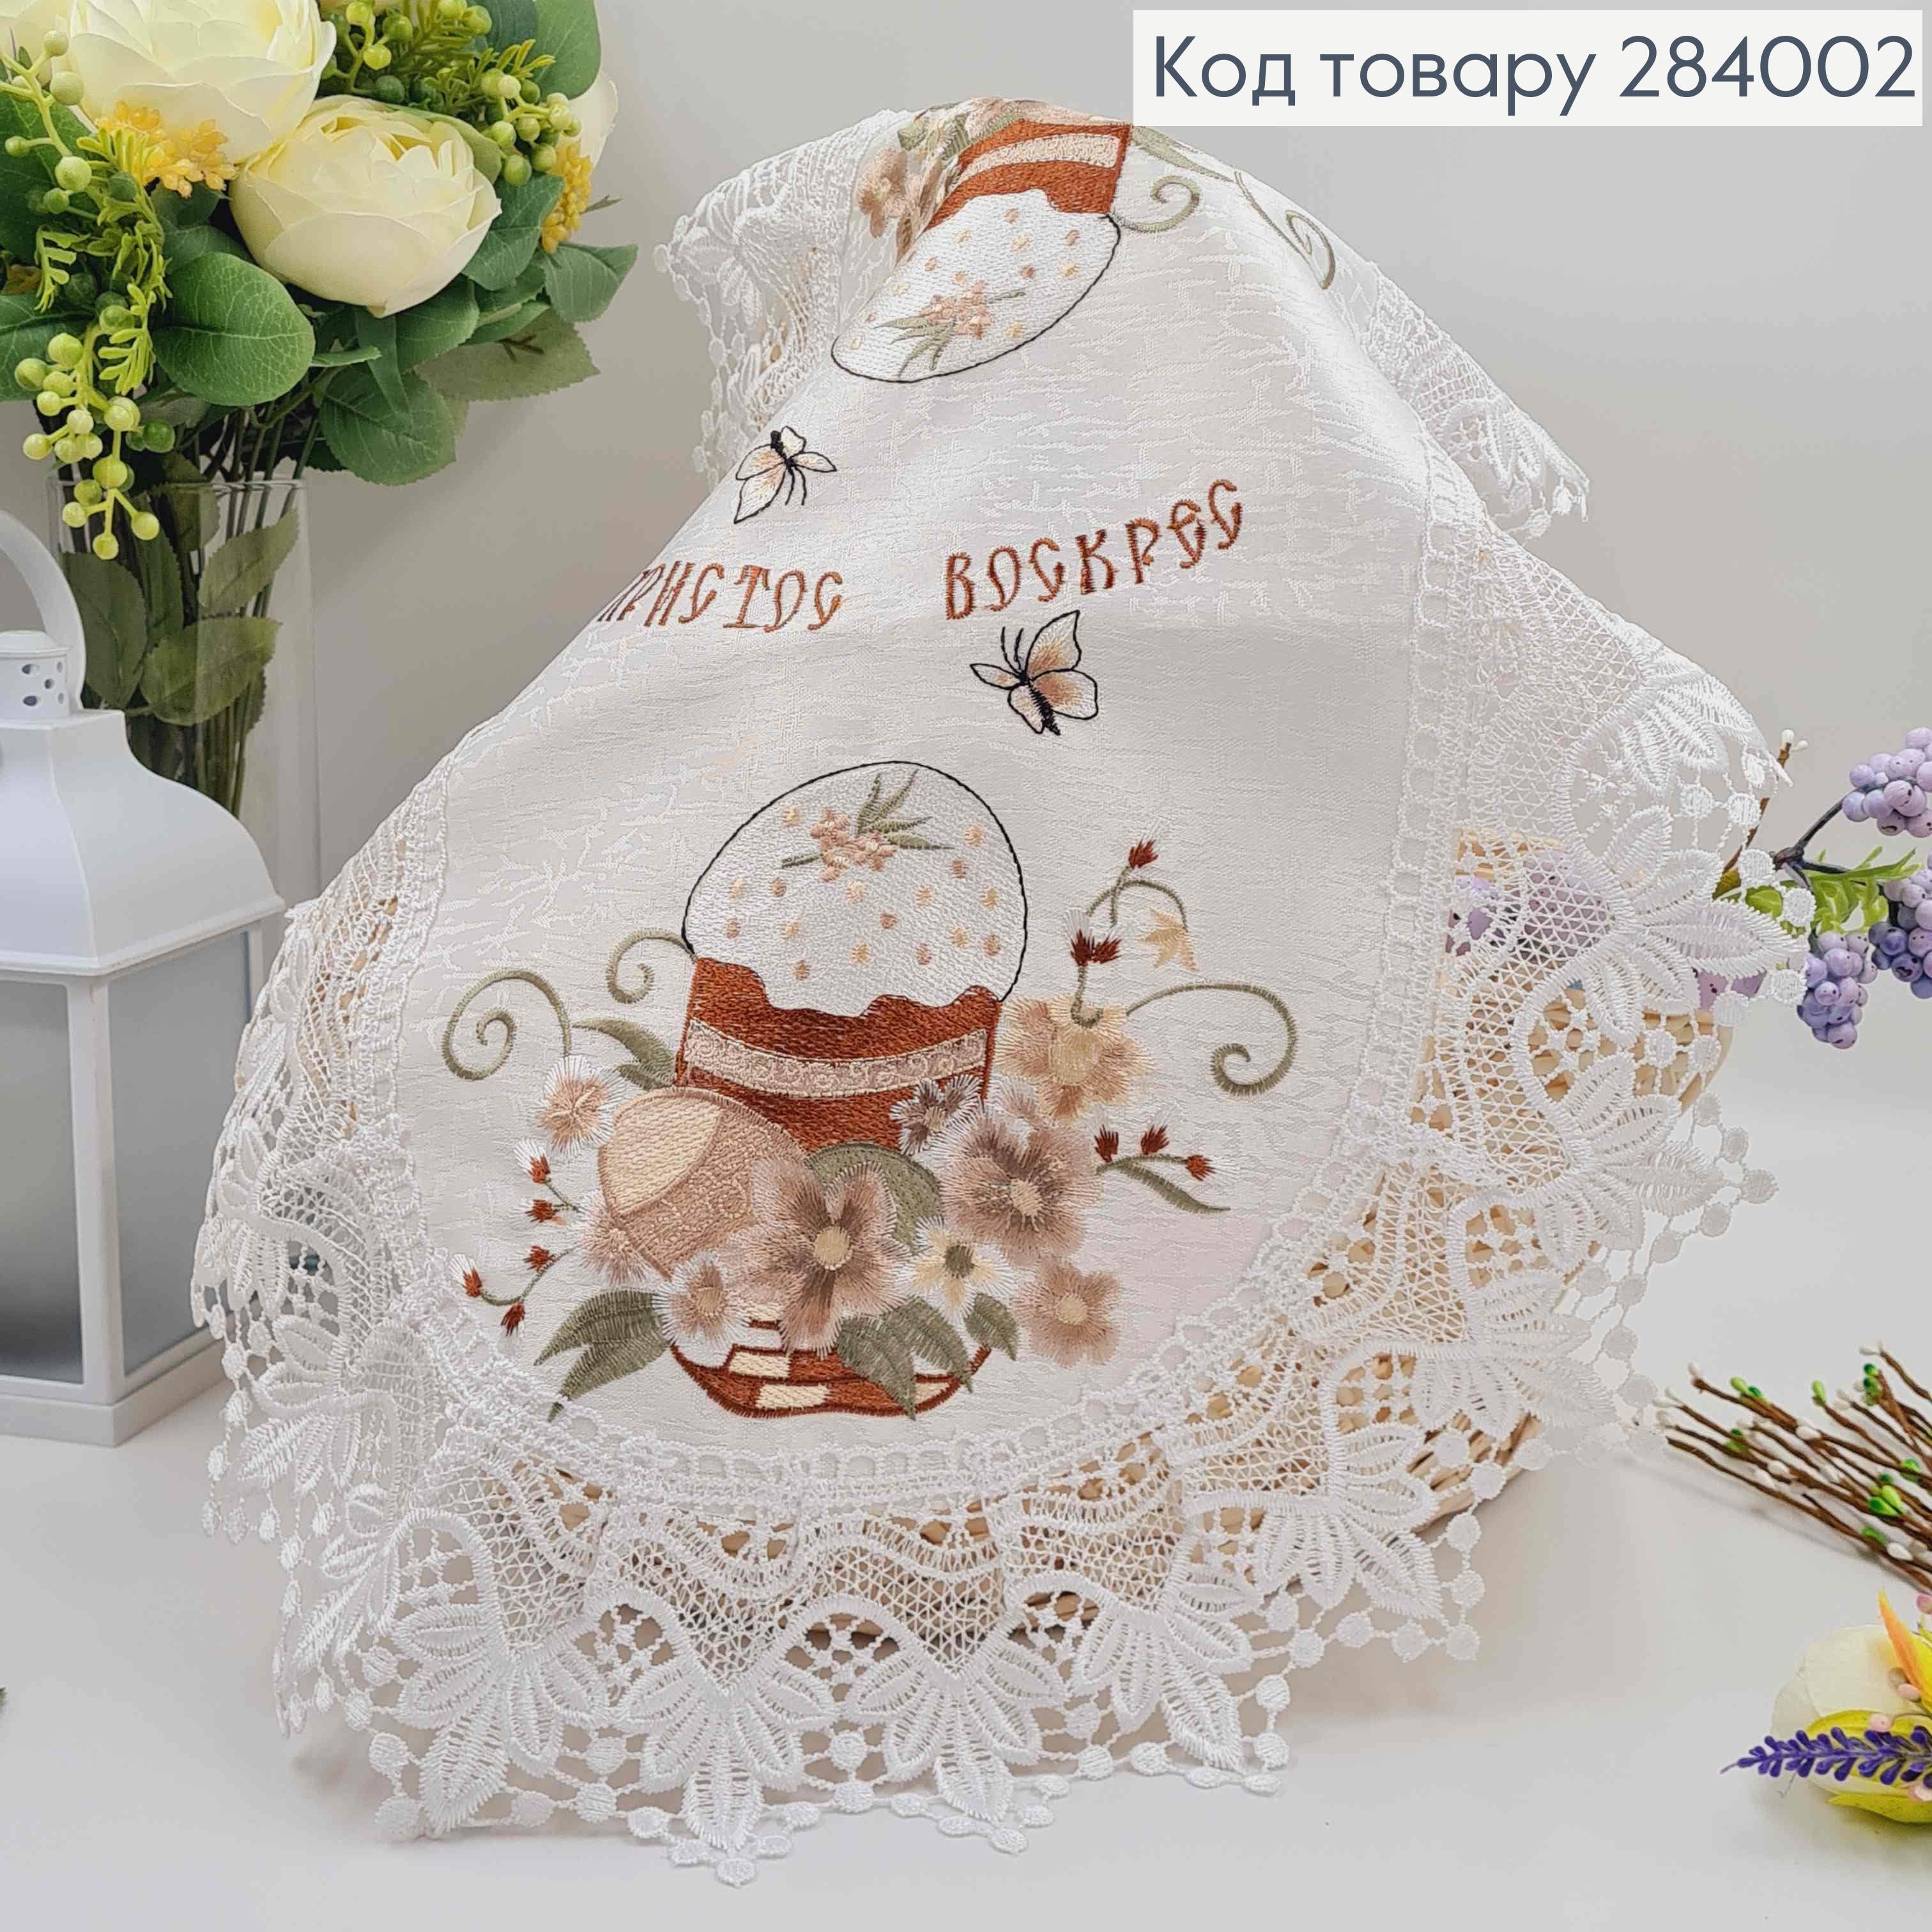 Пасхальная салфетка, с белым кружевом "Цветка с ивовыми веточками", овальная 40*60см 284002 фото 2